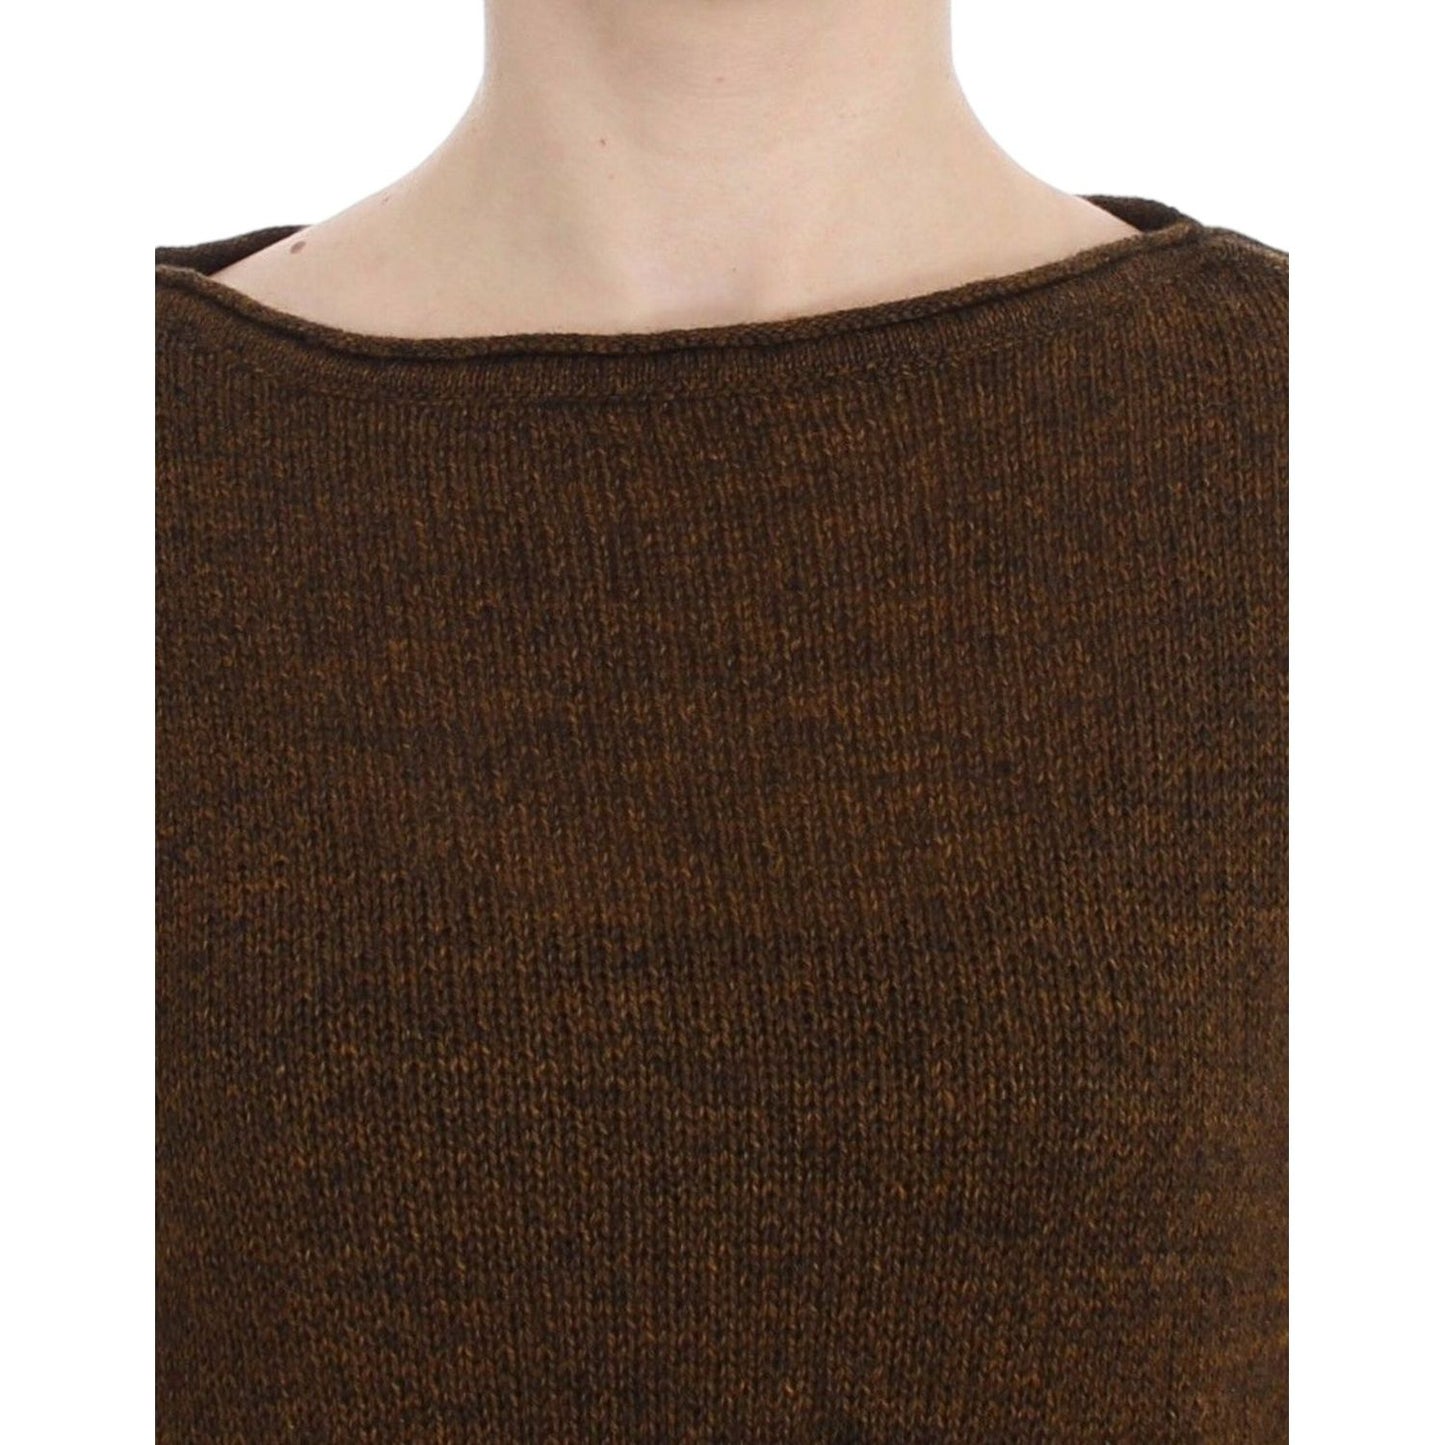 Dolce & GabbanaOversized Knitted Alpaca-Wool PulloverMcRichard Designer Brands£209.00